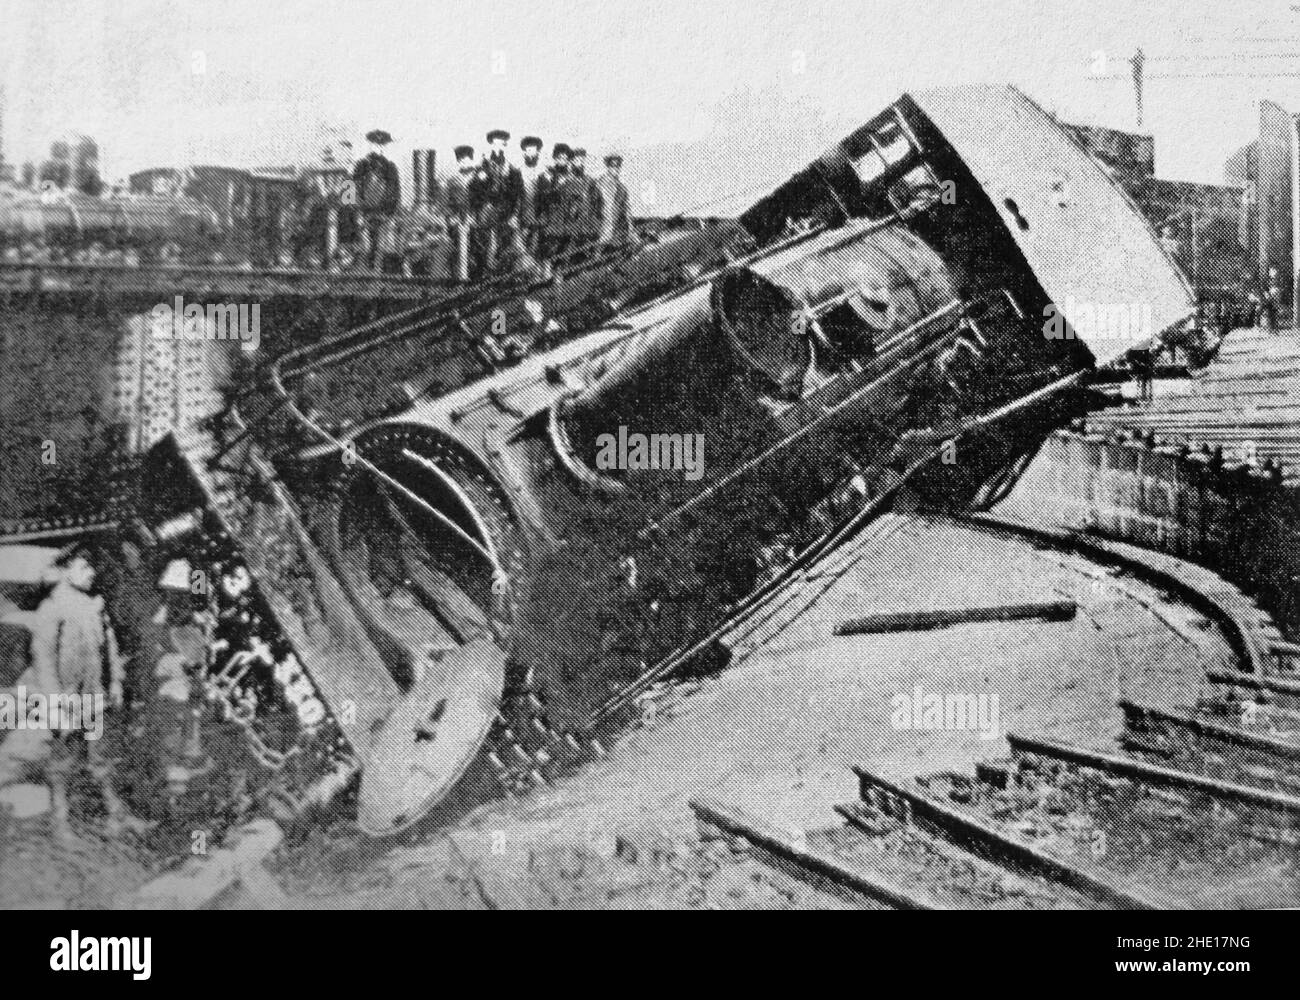 Eine Eisenbahnlokomotive, die von Streikenden in Tiflis (heute Tblisi) in Georgien während der Bürgerunruhen 1905 umgesteult wurde. Stockfoto